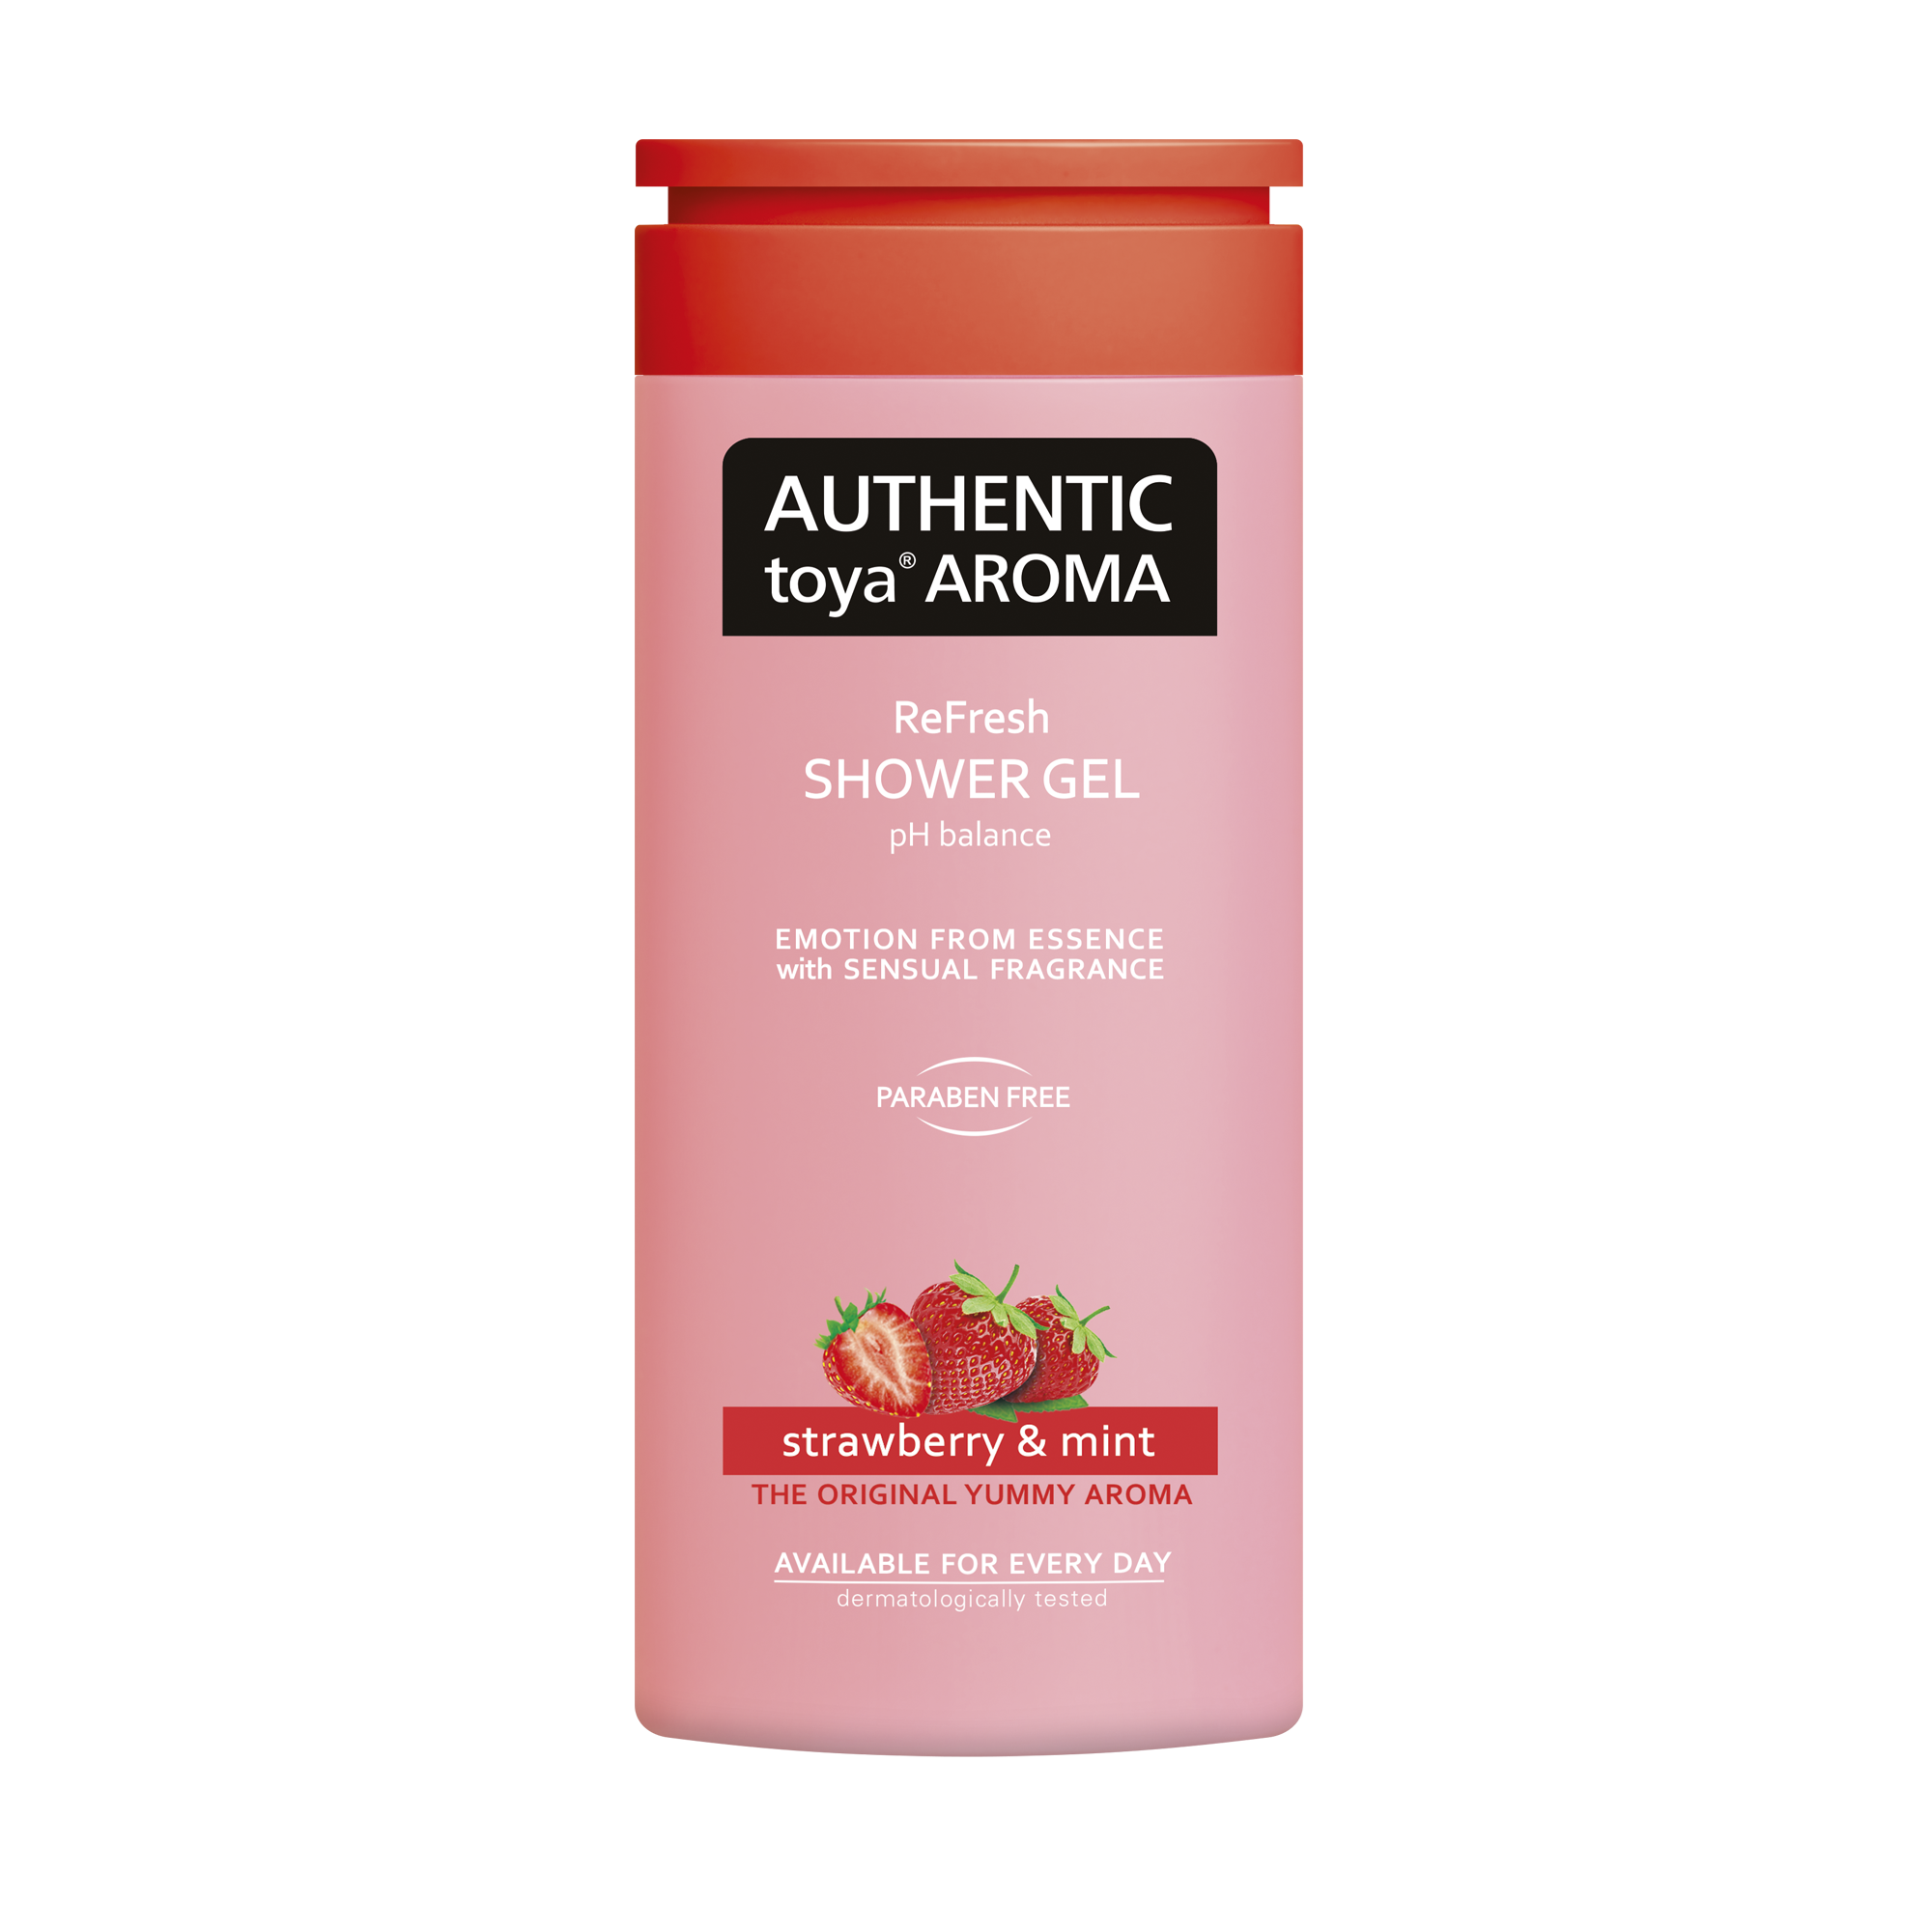 AUTHENTIC toya AROMA – sprchový gél strawberry & mint 